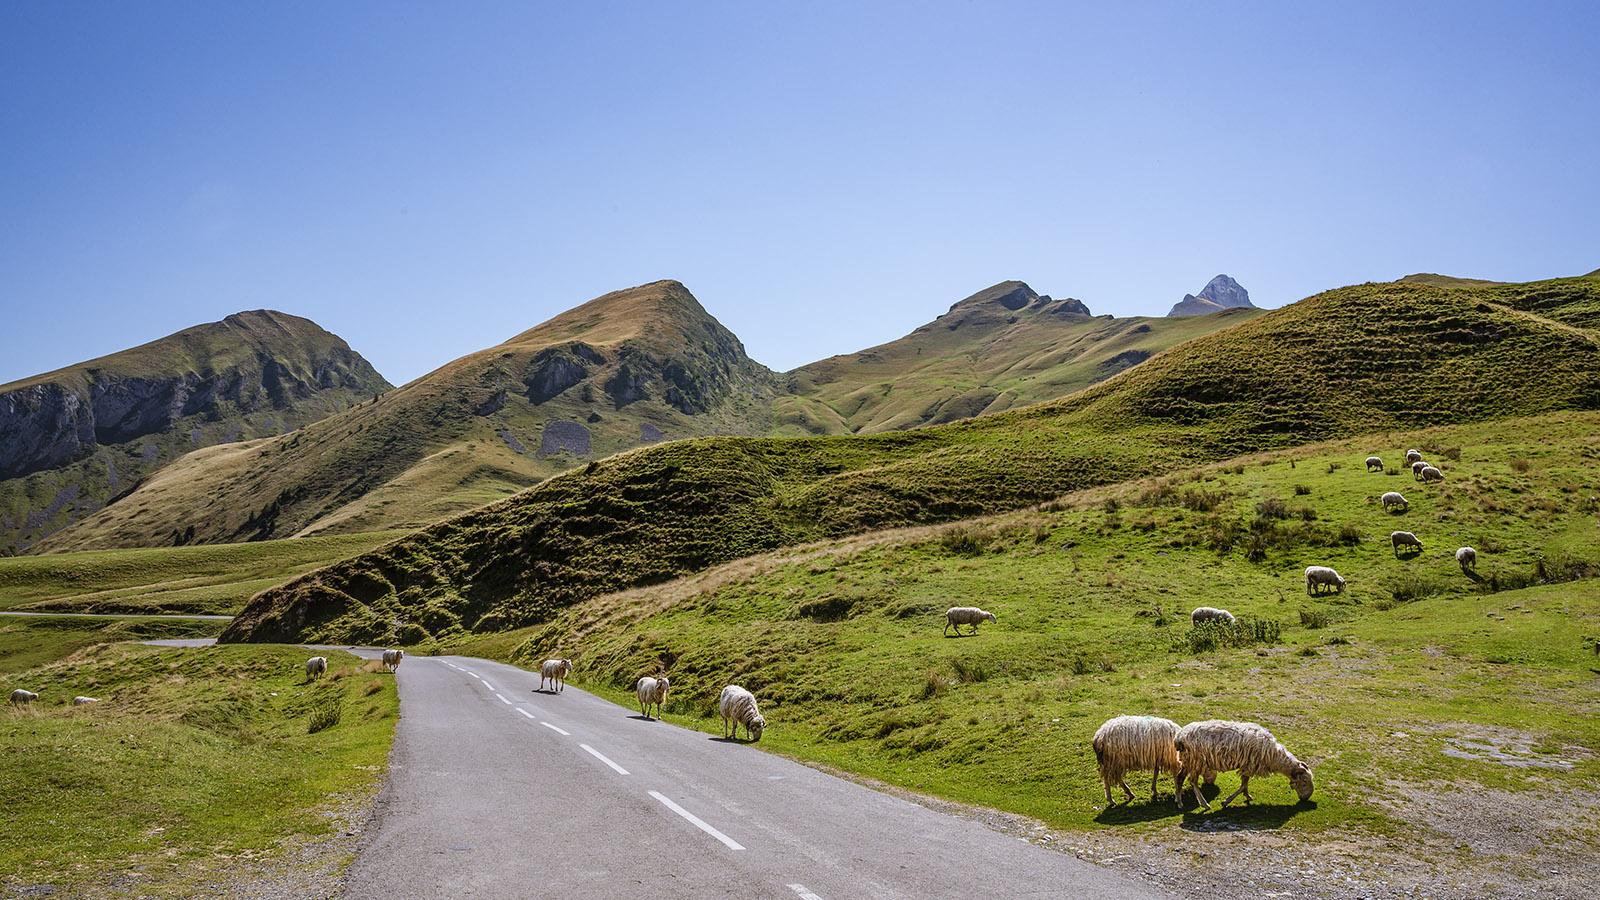 Kurz vor dem Col d'Aubisque kreuzen Schafe die Straße. Foto: Hilke Maunder